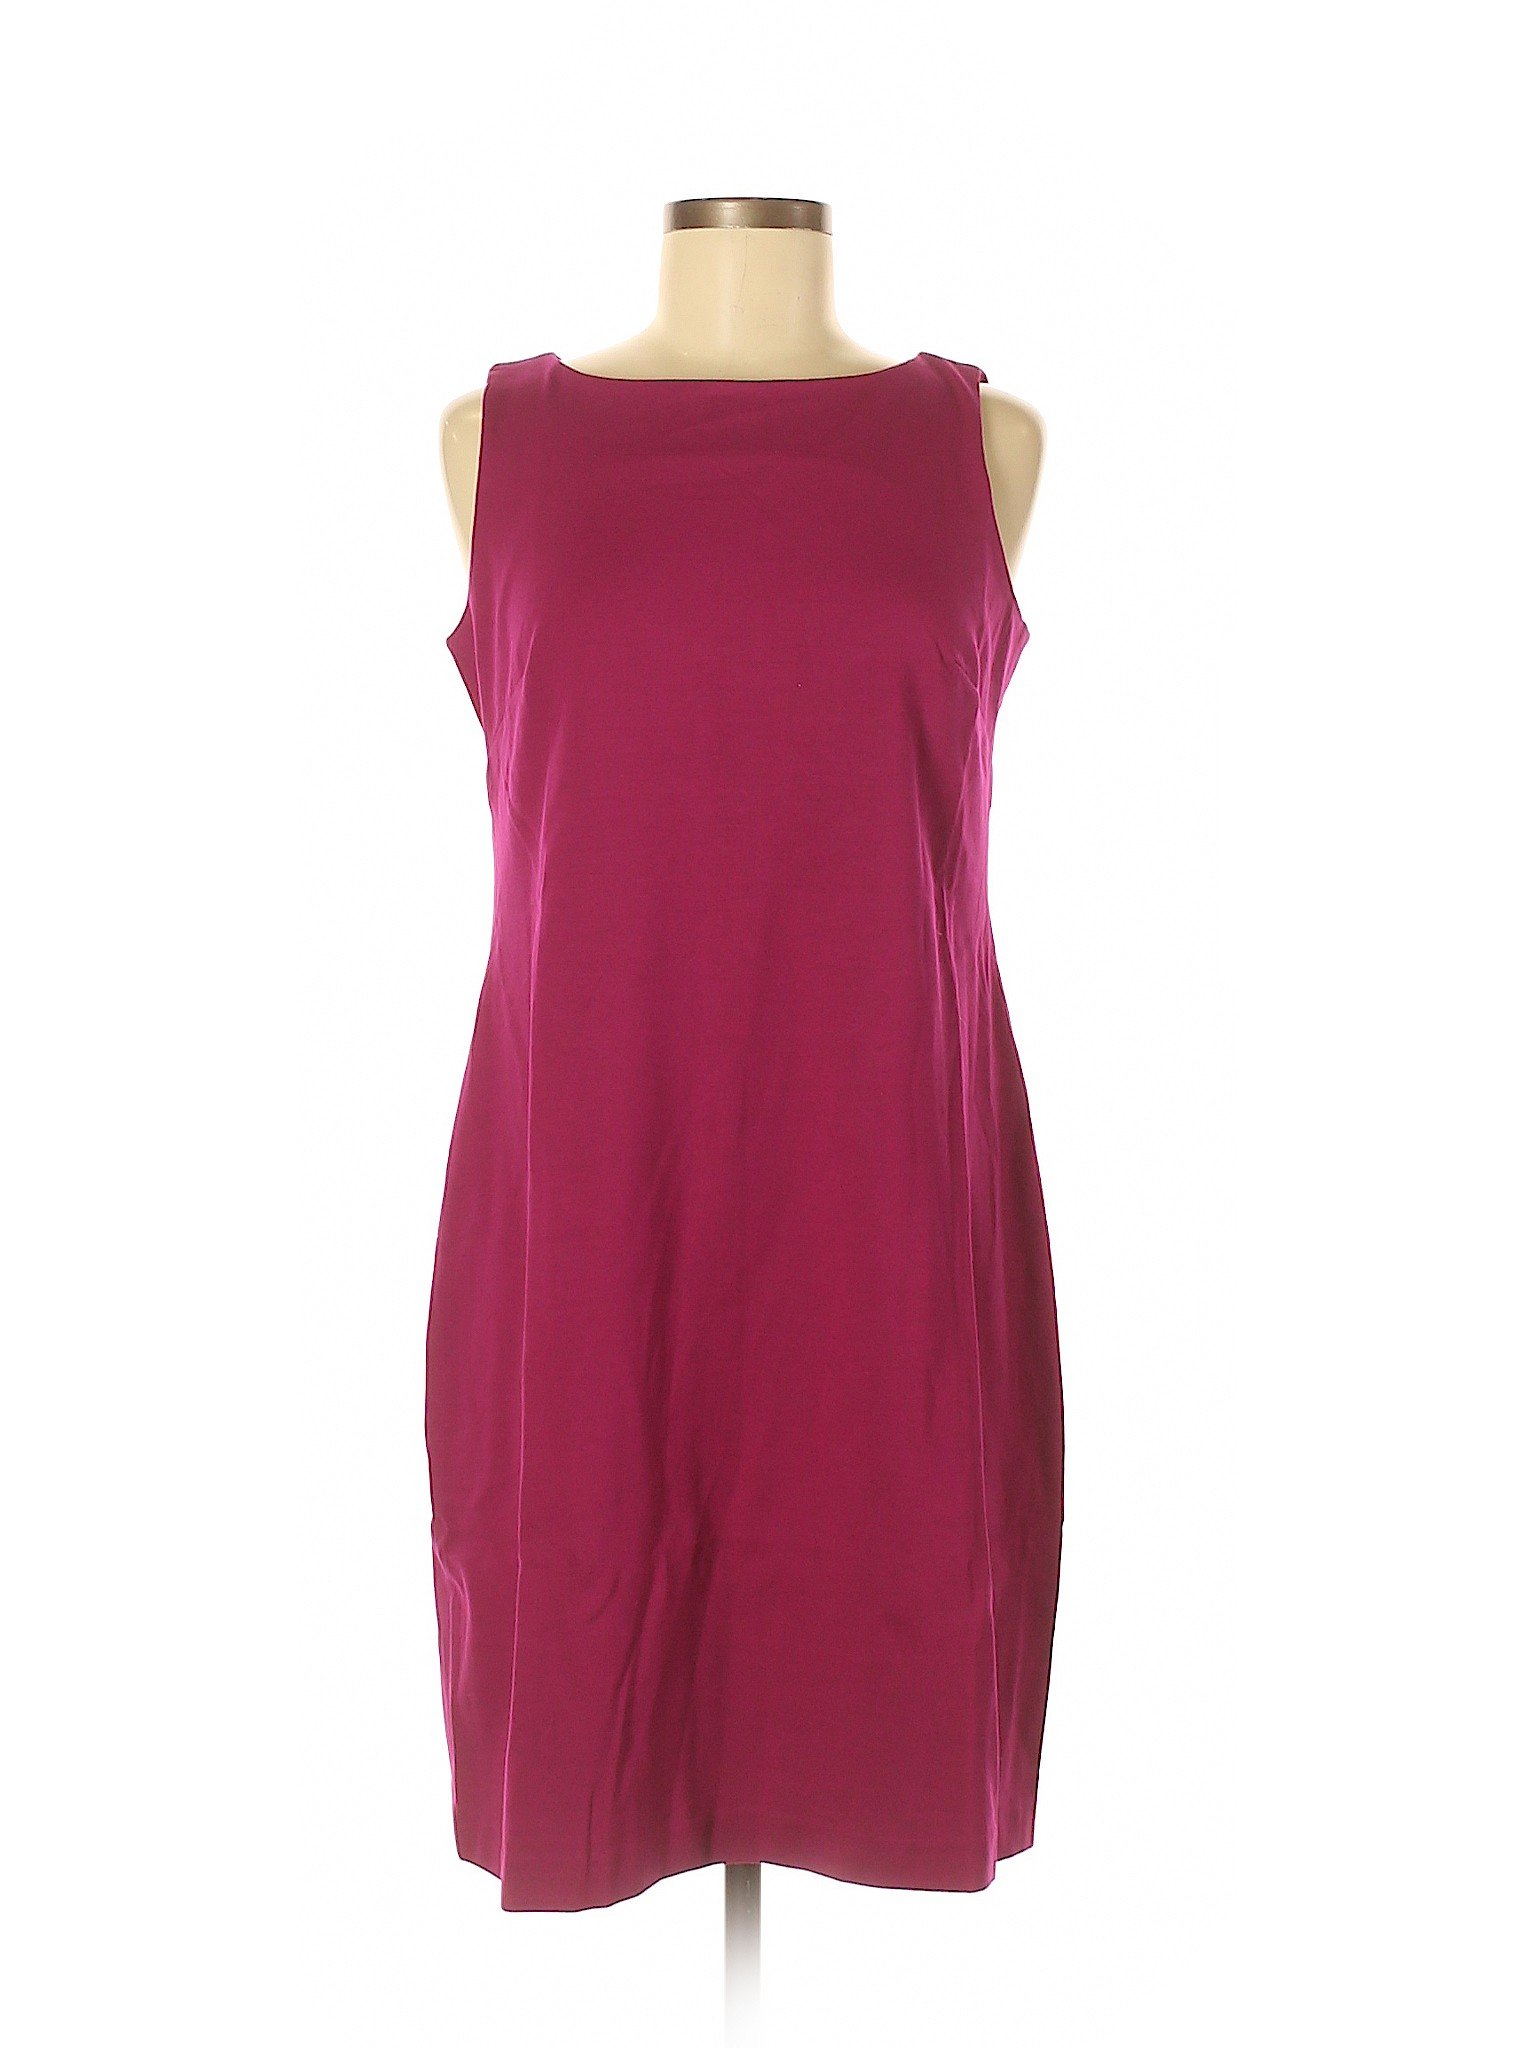 Lands' End Women Purple Casual Dress 6 Petite | eBay